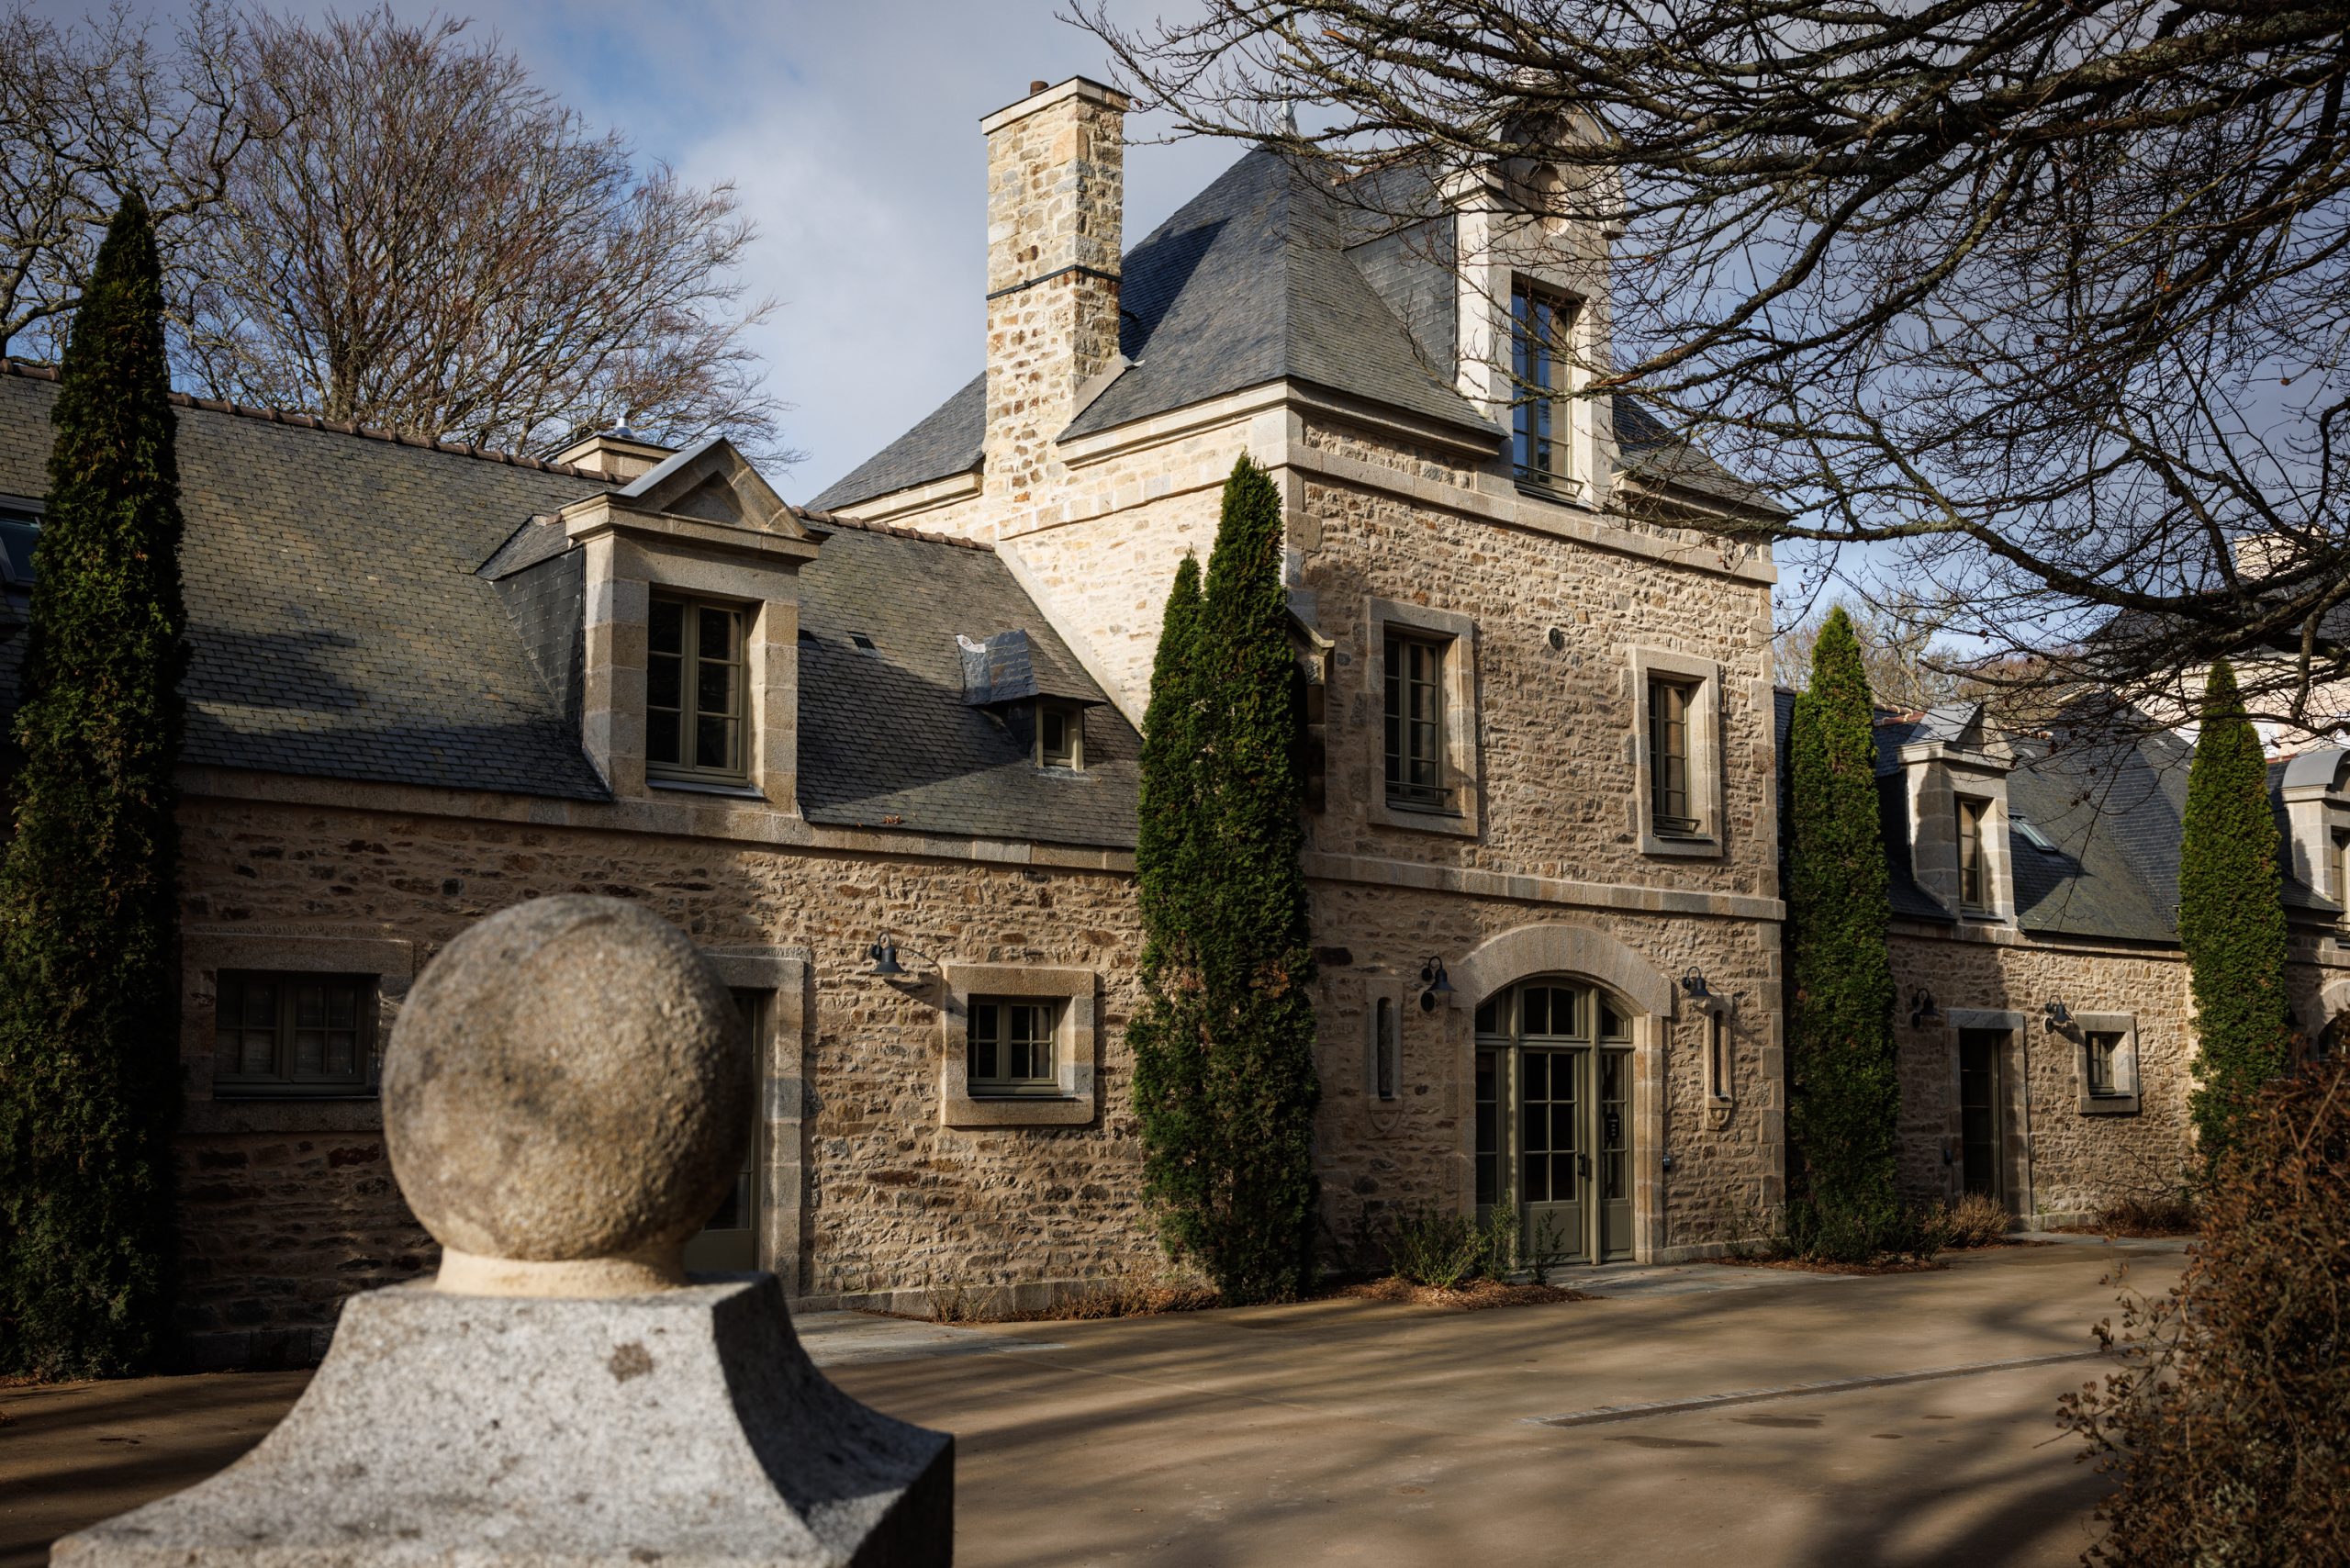 Stone manor house, classic architecture - 4 star hotel Bretagne